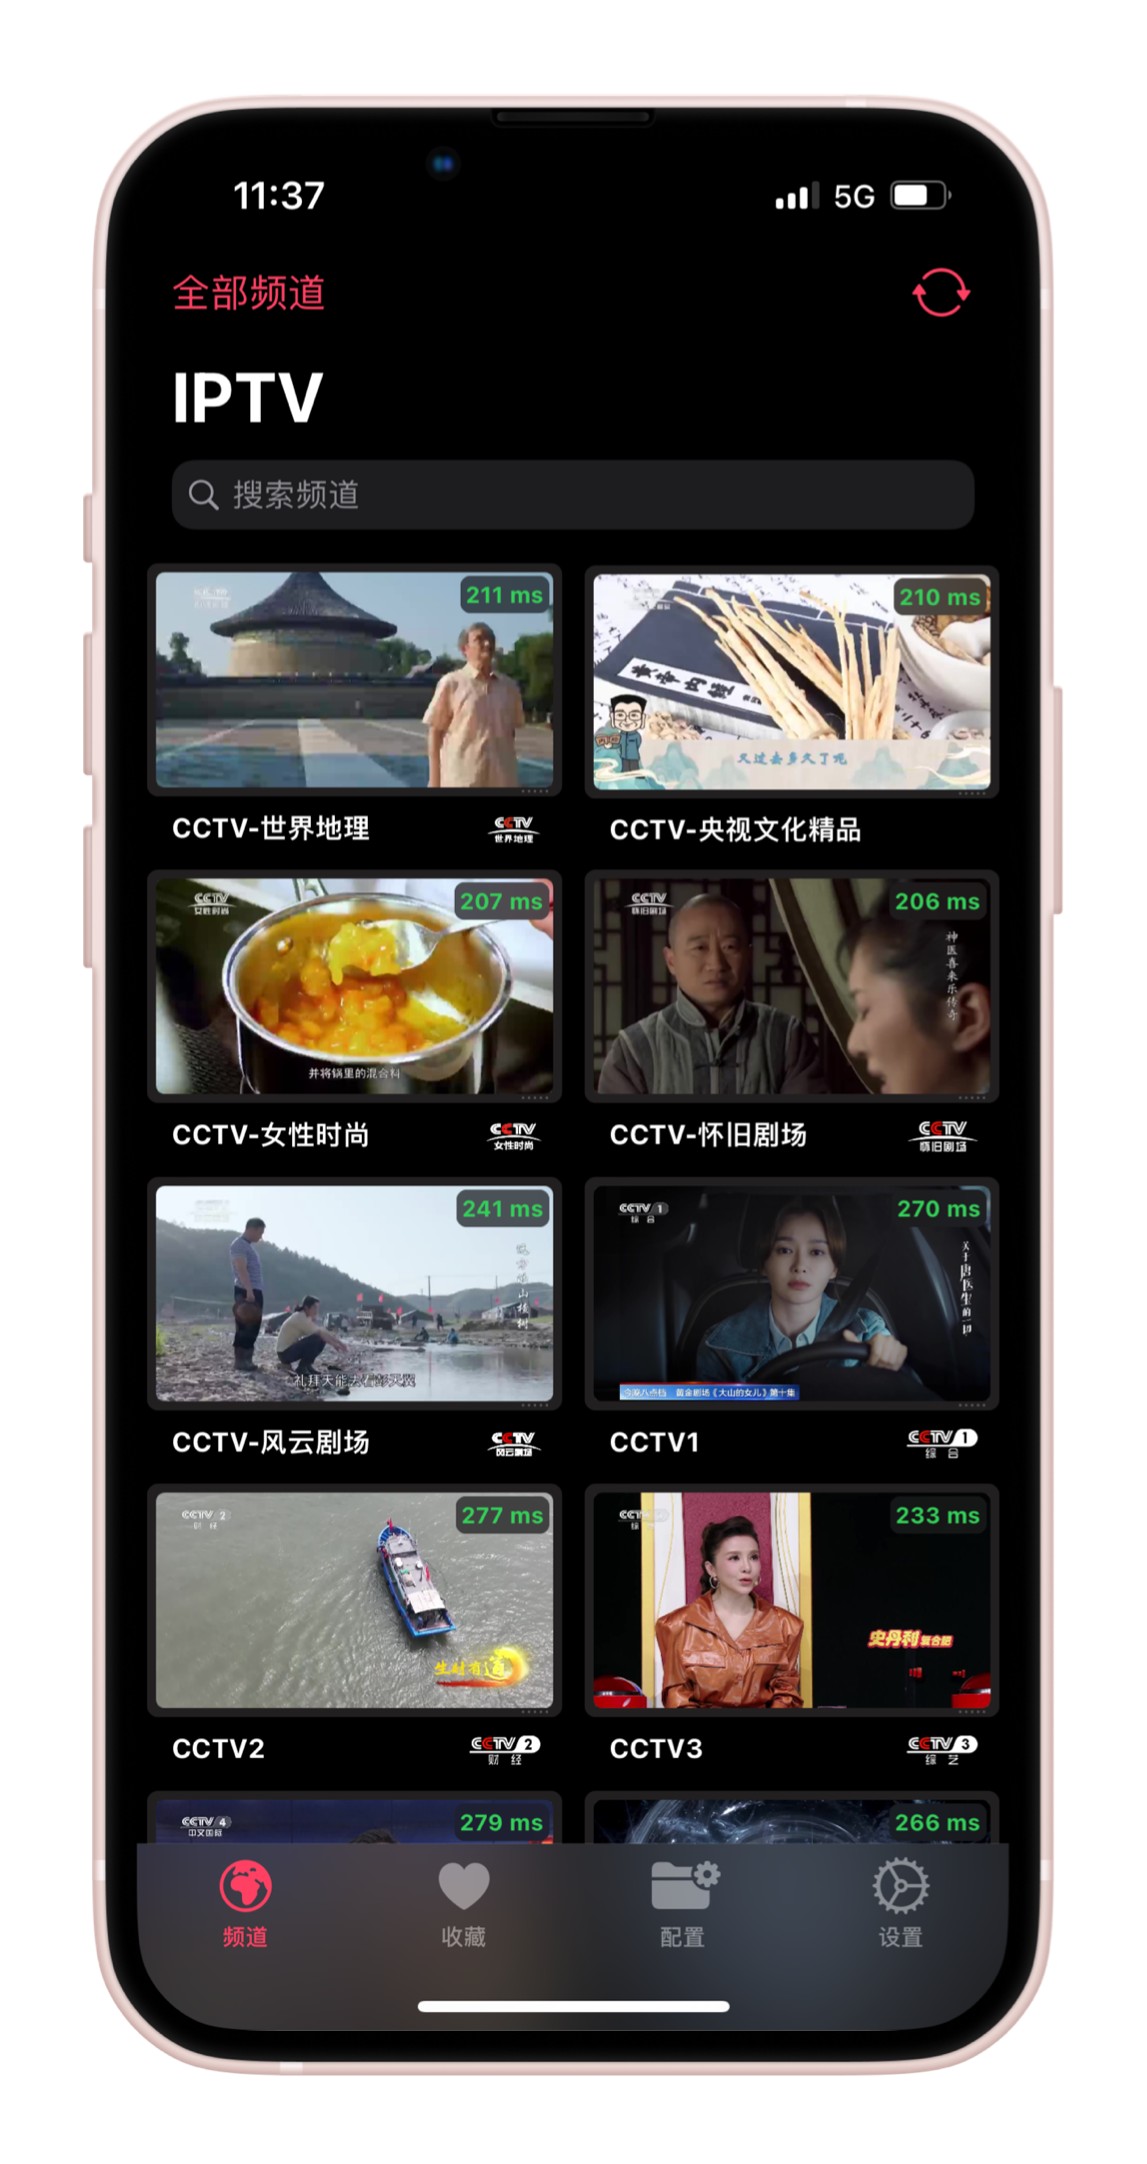 APTV -iOS平台直播流播放器，播放在线 m3u8 视频